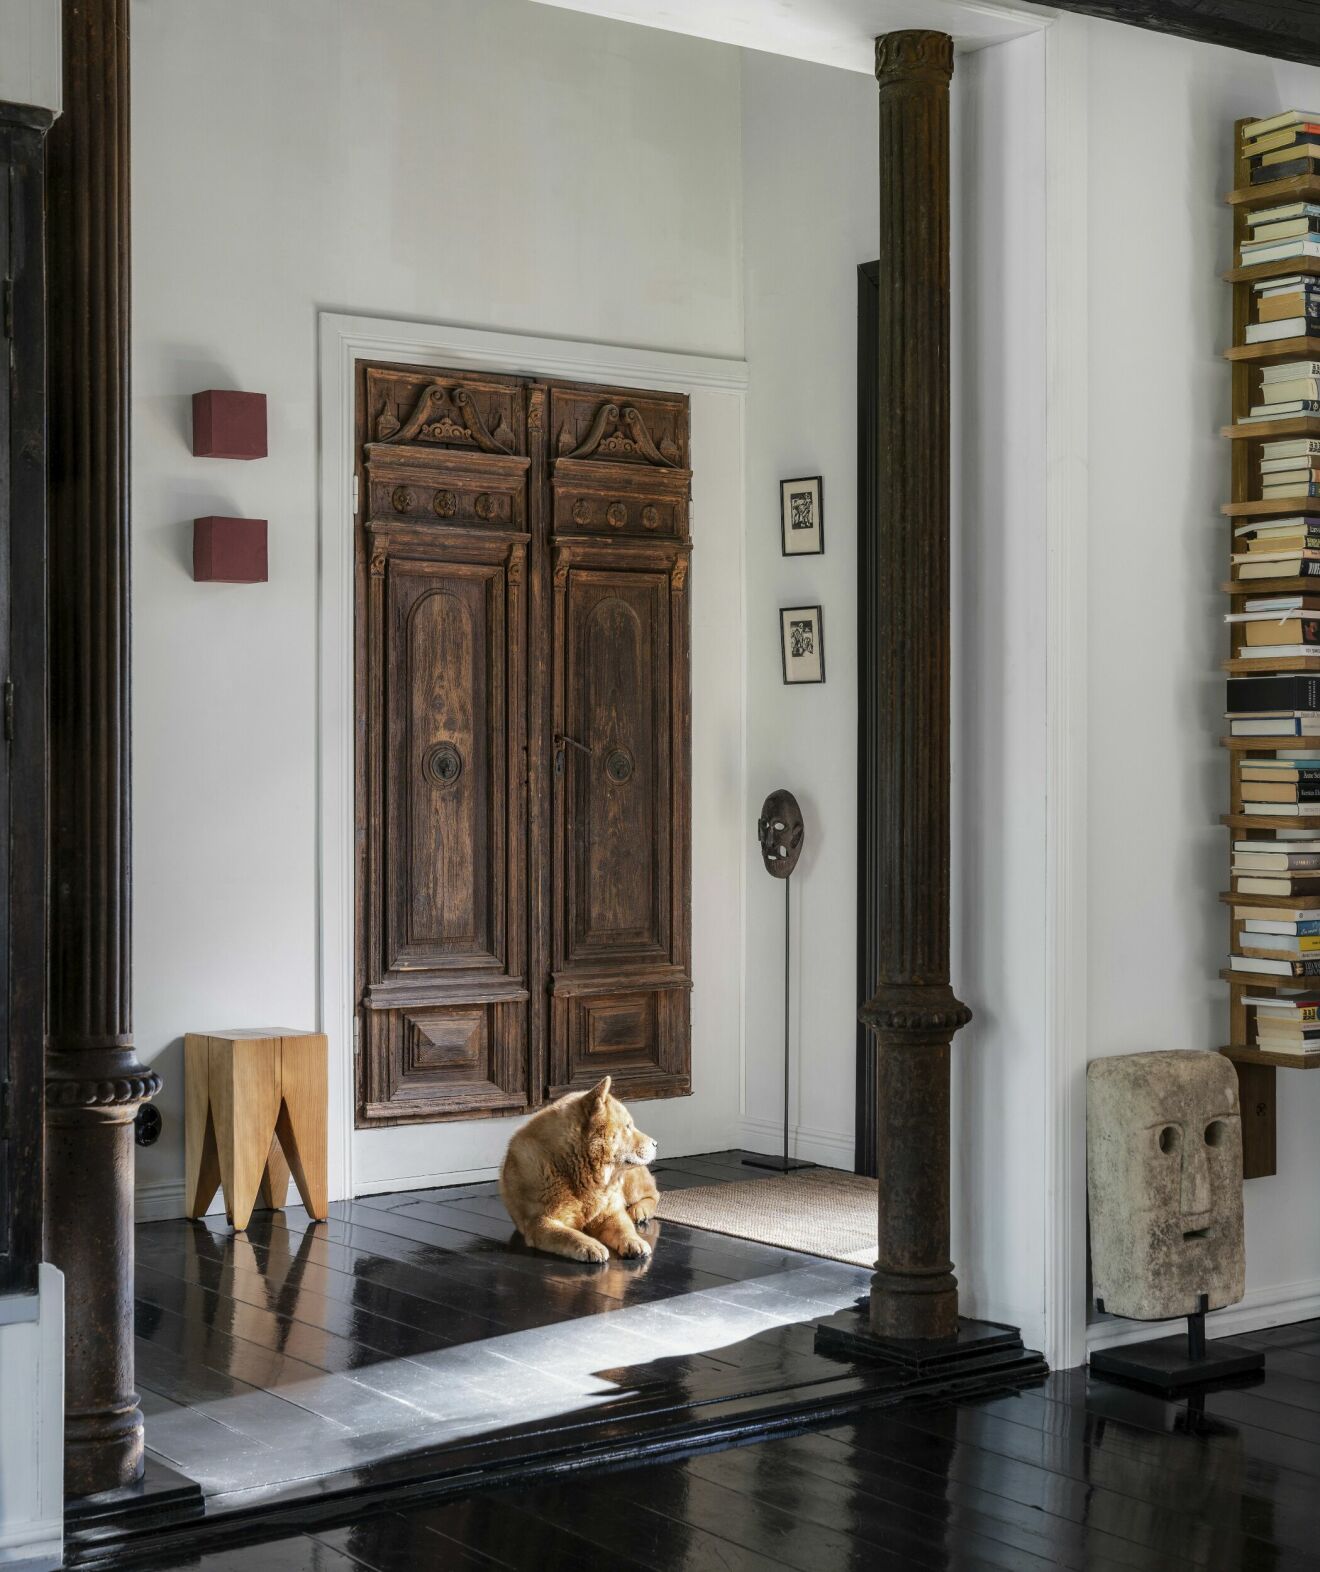 Antika pelare från Ungern, köpta av antikhandlaren Richard Cederberg på CIA Cederbergs interiors &amp; antiques i Dalarna. Masken i sten och en afrikansk mask. Hund vilar på golvet.